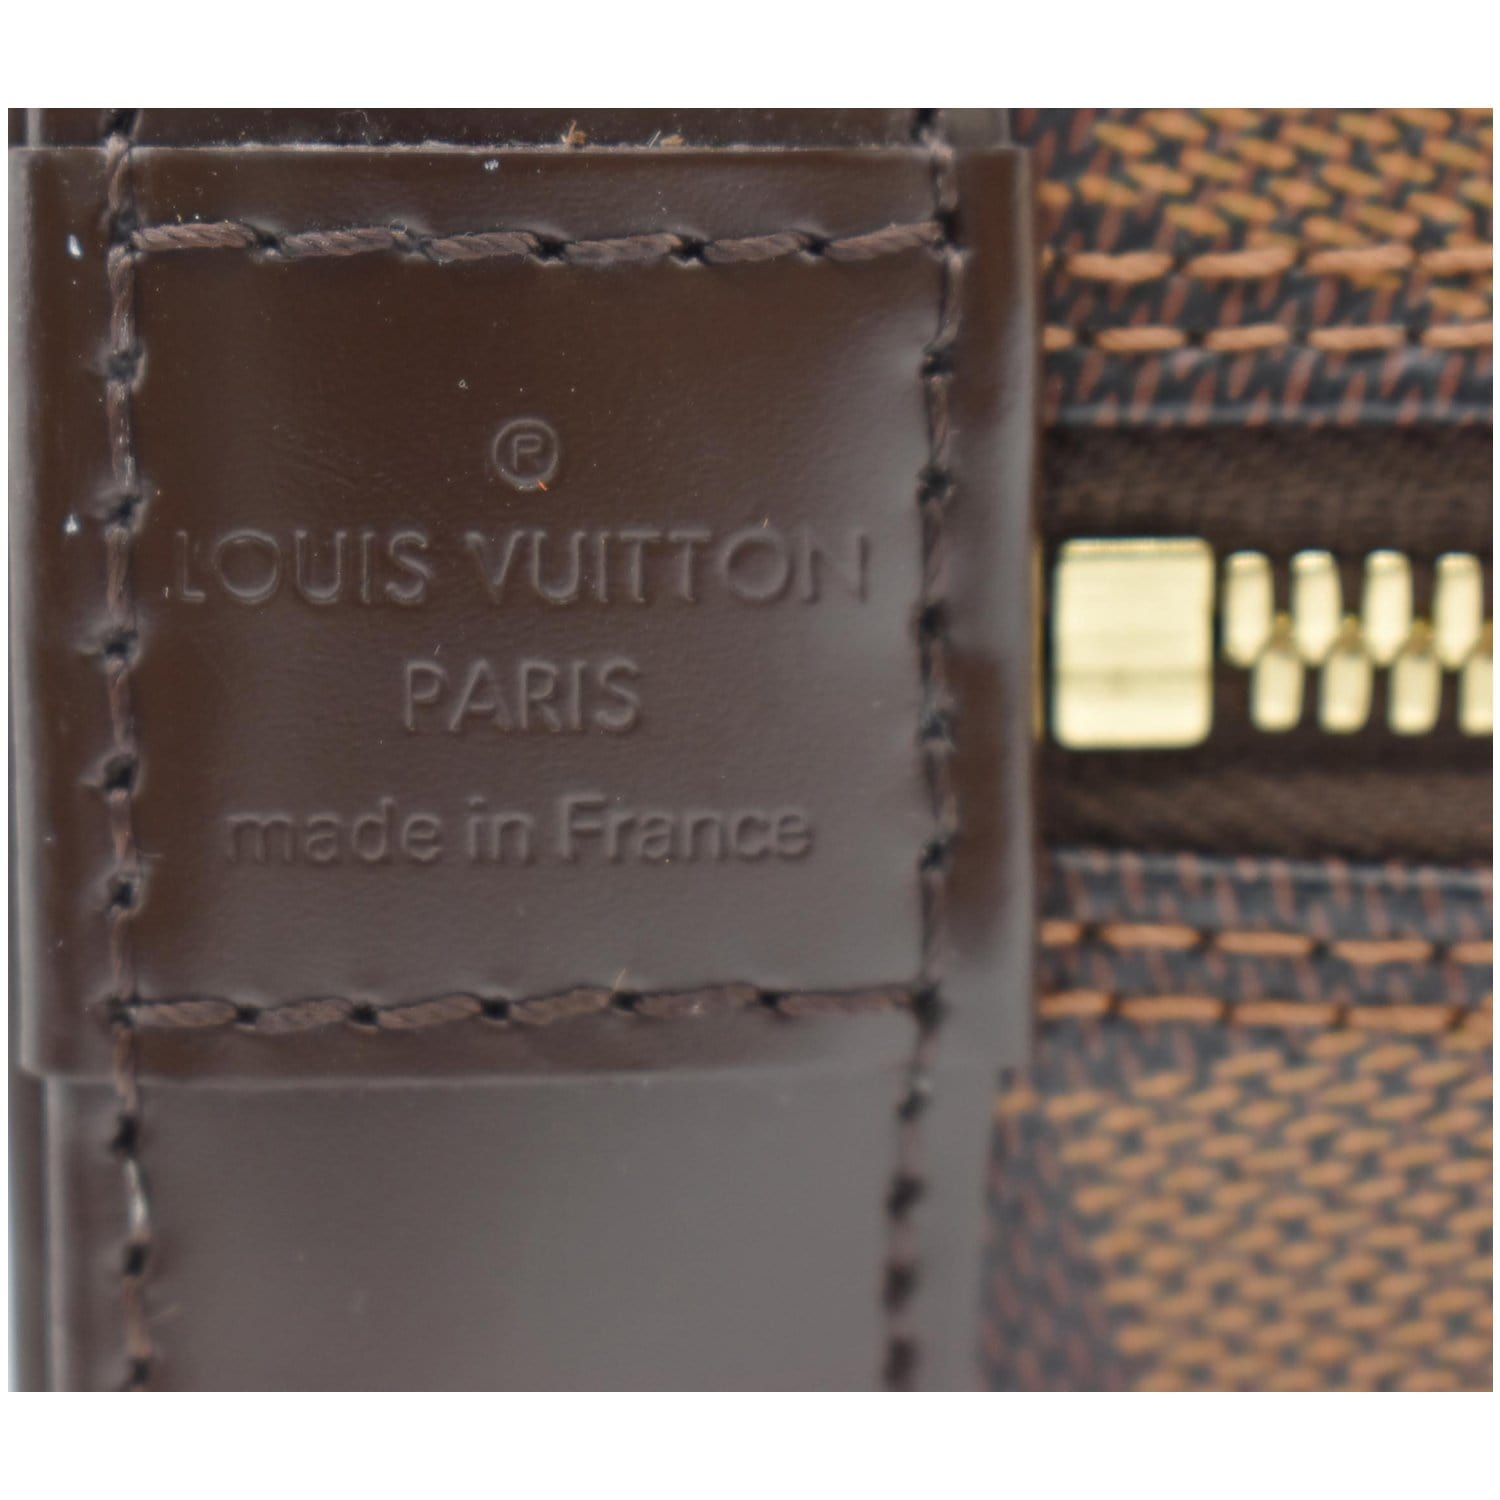 Louis Vuitton Alma PM Damier – thankunext.us